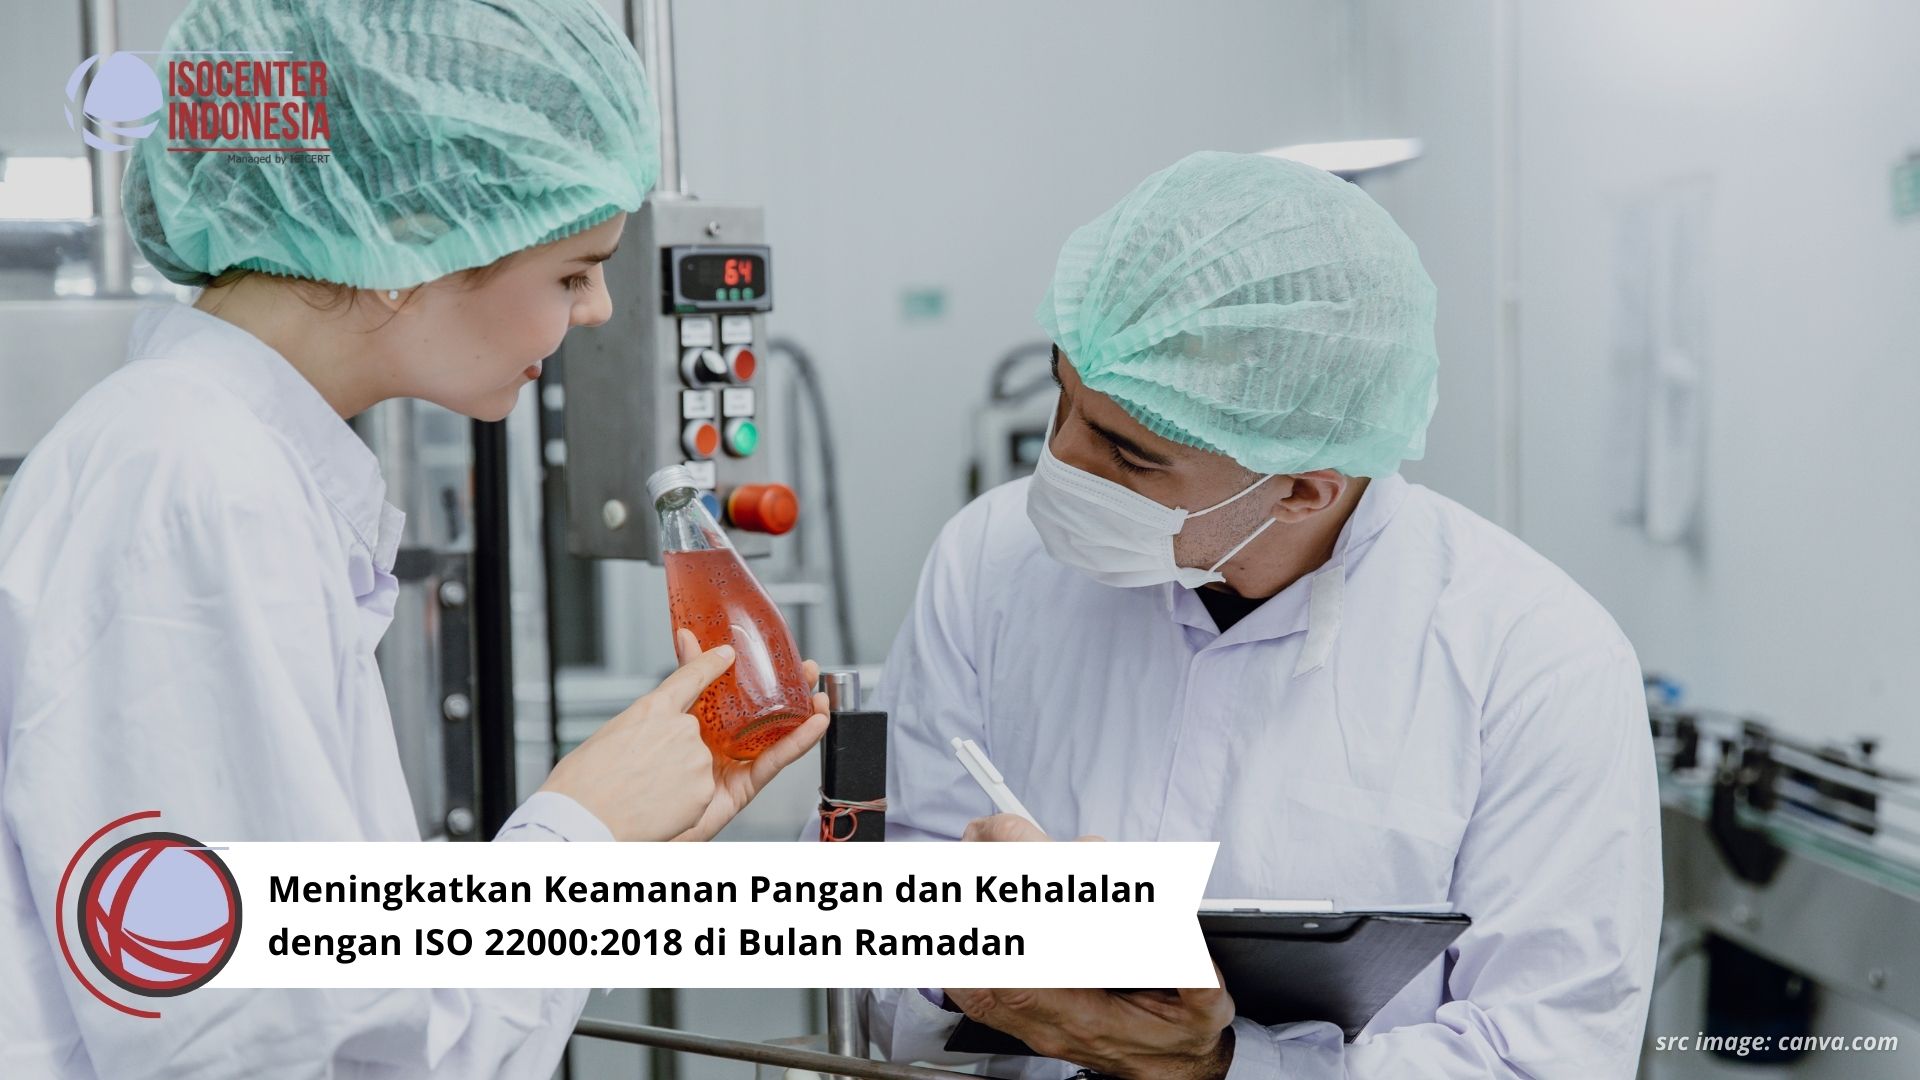 Meningkatkan Keamanan Pangan dan Kehalalan dengan ISO 22000:2018 di Bulan Ramadan